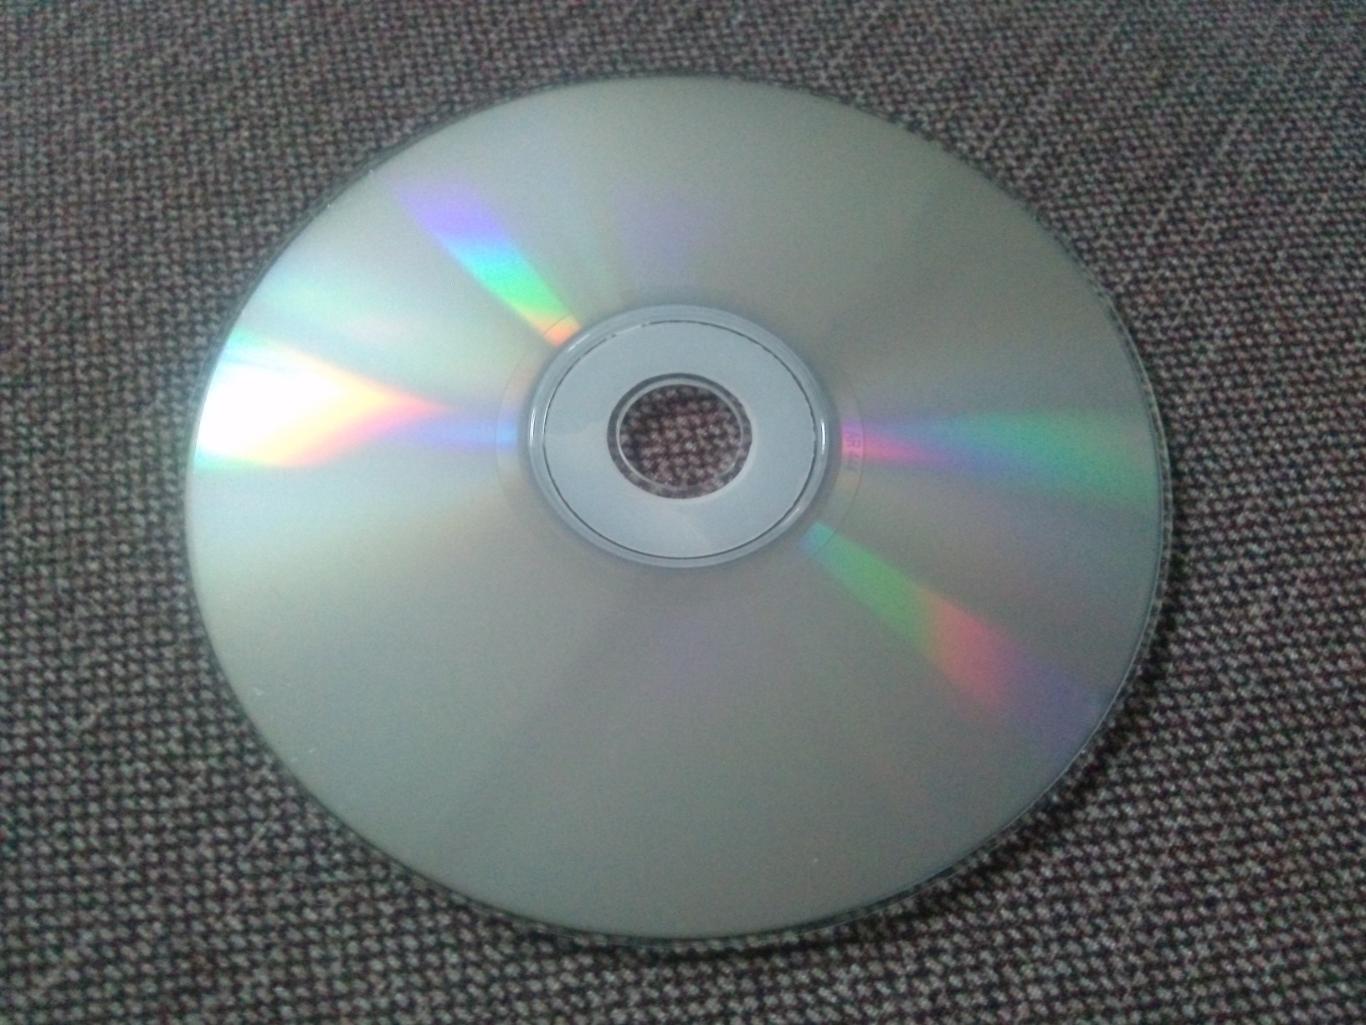 MP - 3 CD : группа Gregorian 1998 - 2007 гг. (10 альбомов) Рок - музыка 3